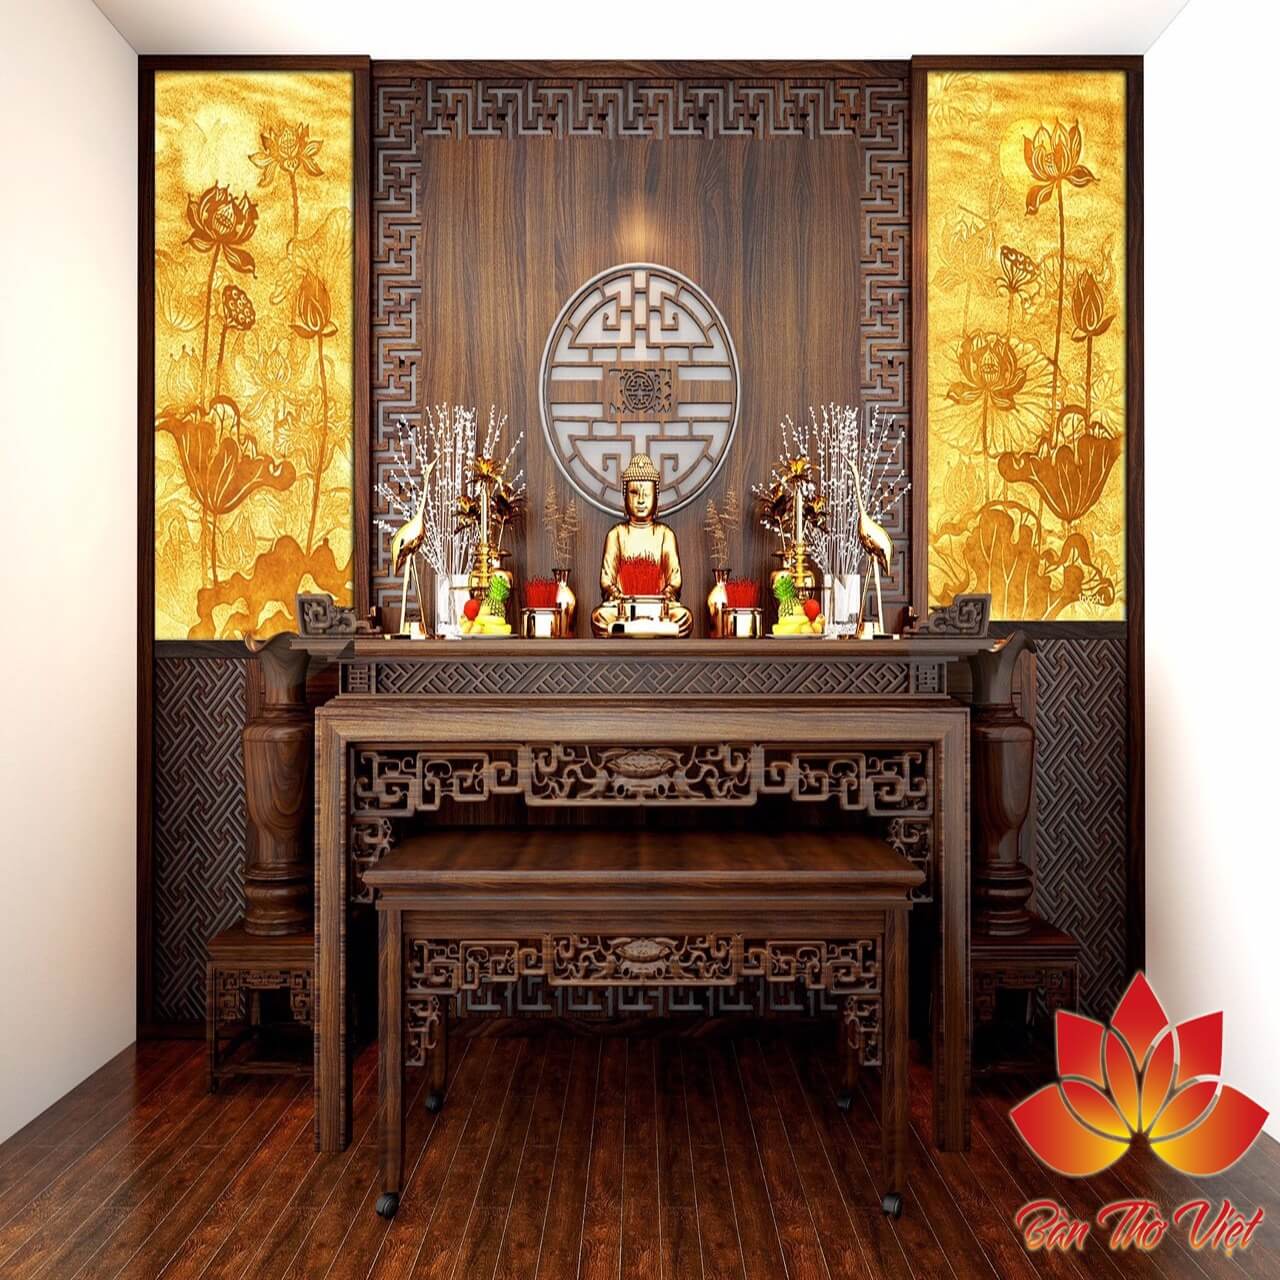 Bàn thờ Hà Nội - được thiết kế bằng gỗ tự nhiên tuyền thống của xưa, mang lại không gian tuyệt vời cho ngôi nhà của bạn. Nơi đây với những truyền thống tuyệt vời mang lại cho bạn cảm giác thật an lành.